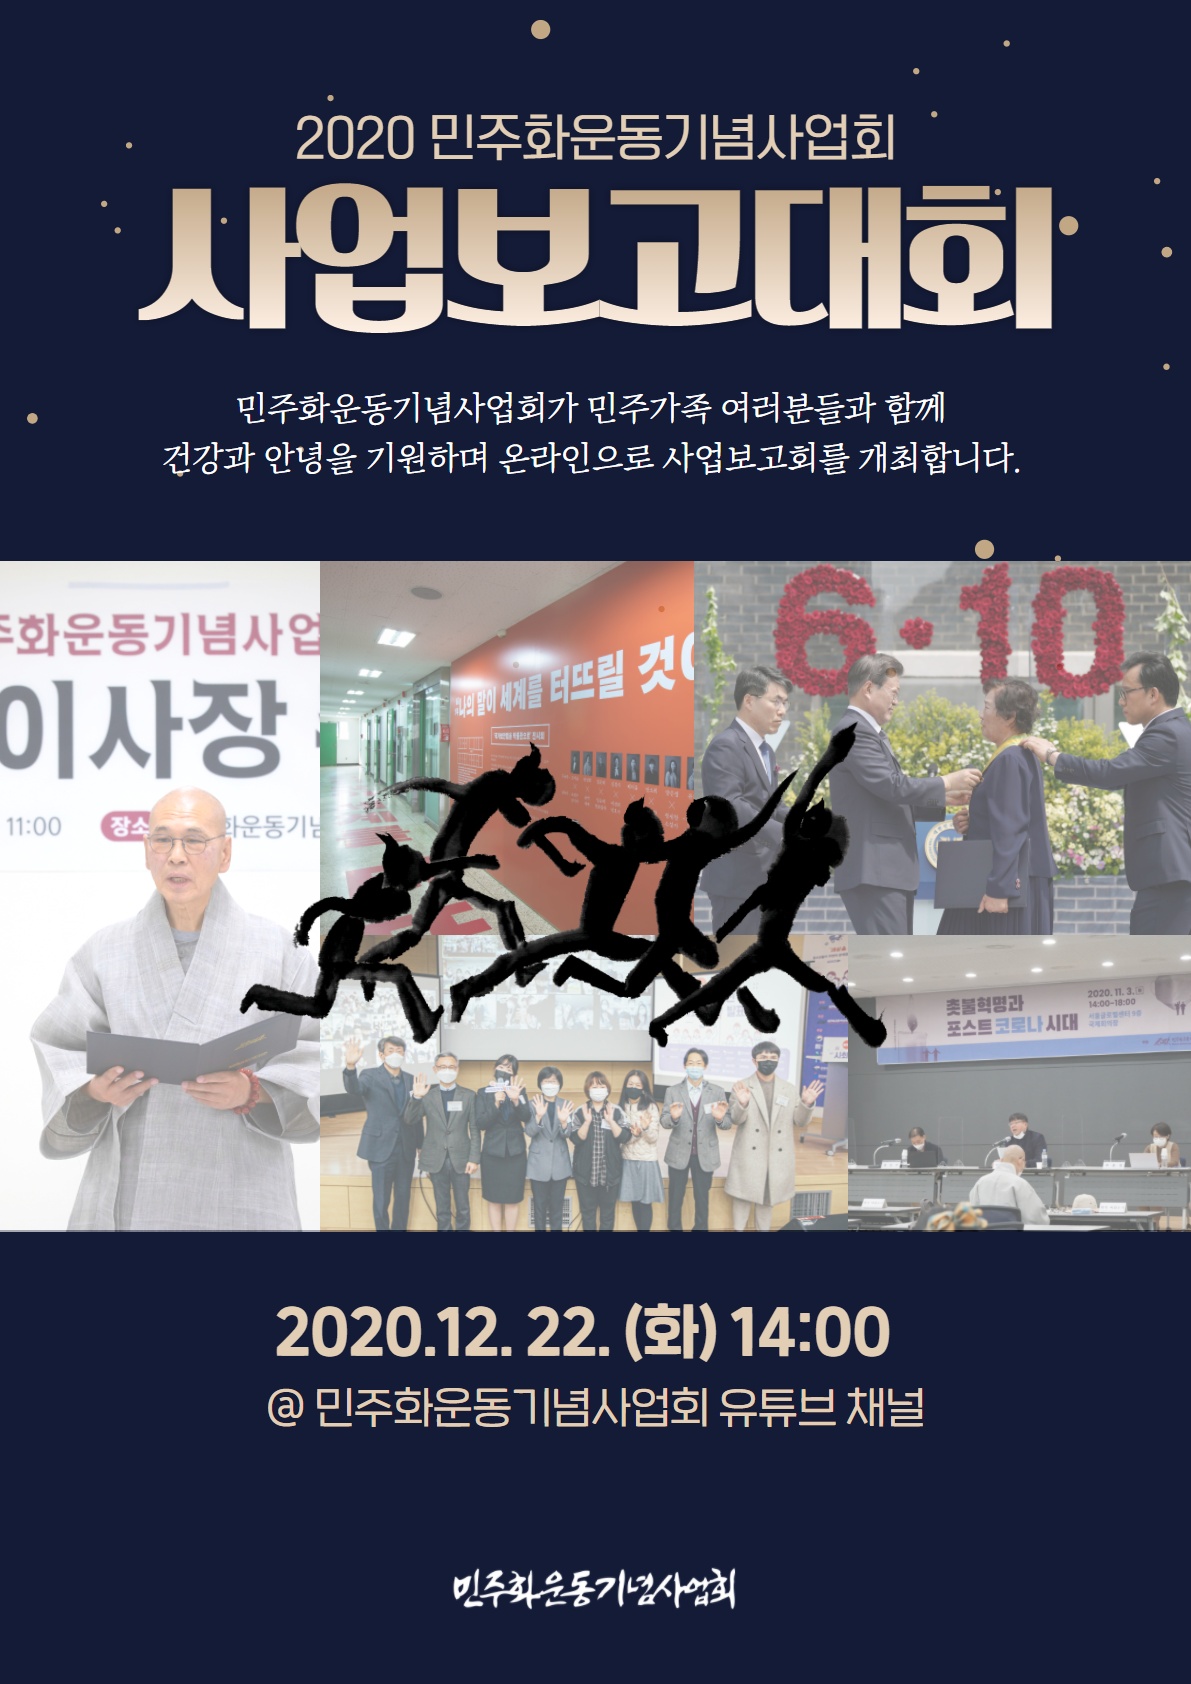 2020 민주화운동기념사업회 사업보고대회 웹 포스터-2020.12.22.(화) 오후 14시 민주화운동기념사업회 유튜브채널에서 온라인으로 사업보고대회가 진행됩니다.